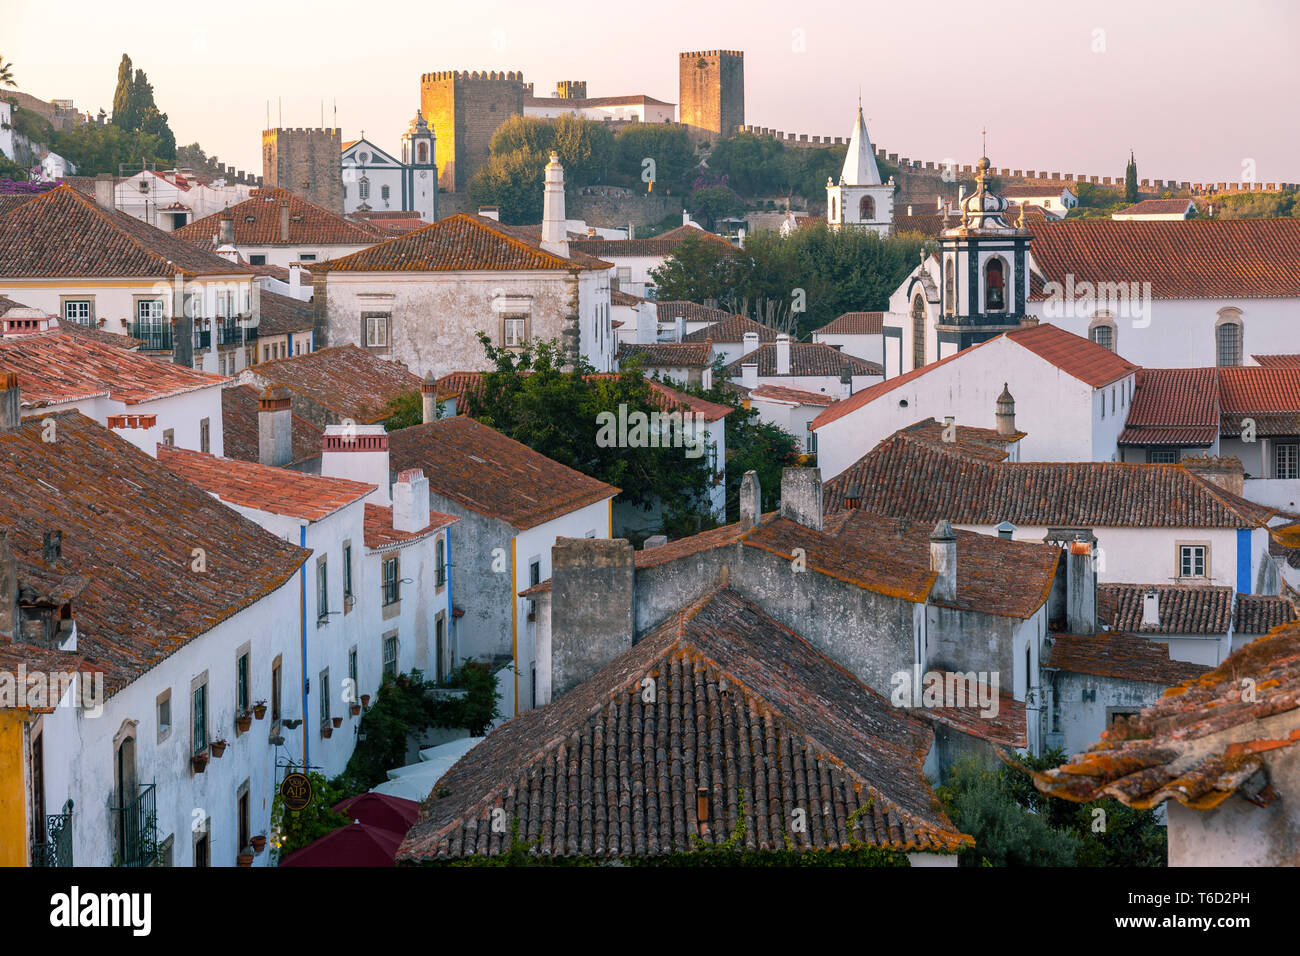 Obidos al anochecer, uno de los pueblos medievales más bellos de Portugal, tomada a los moros en el siglo 12. Foto de stock